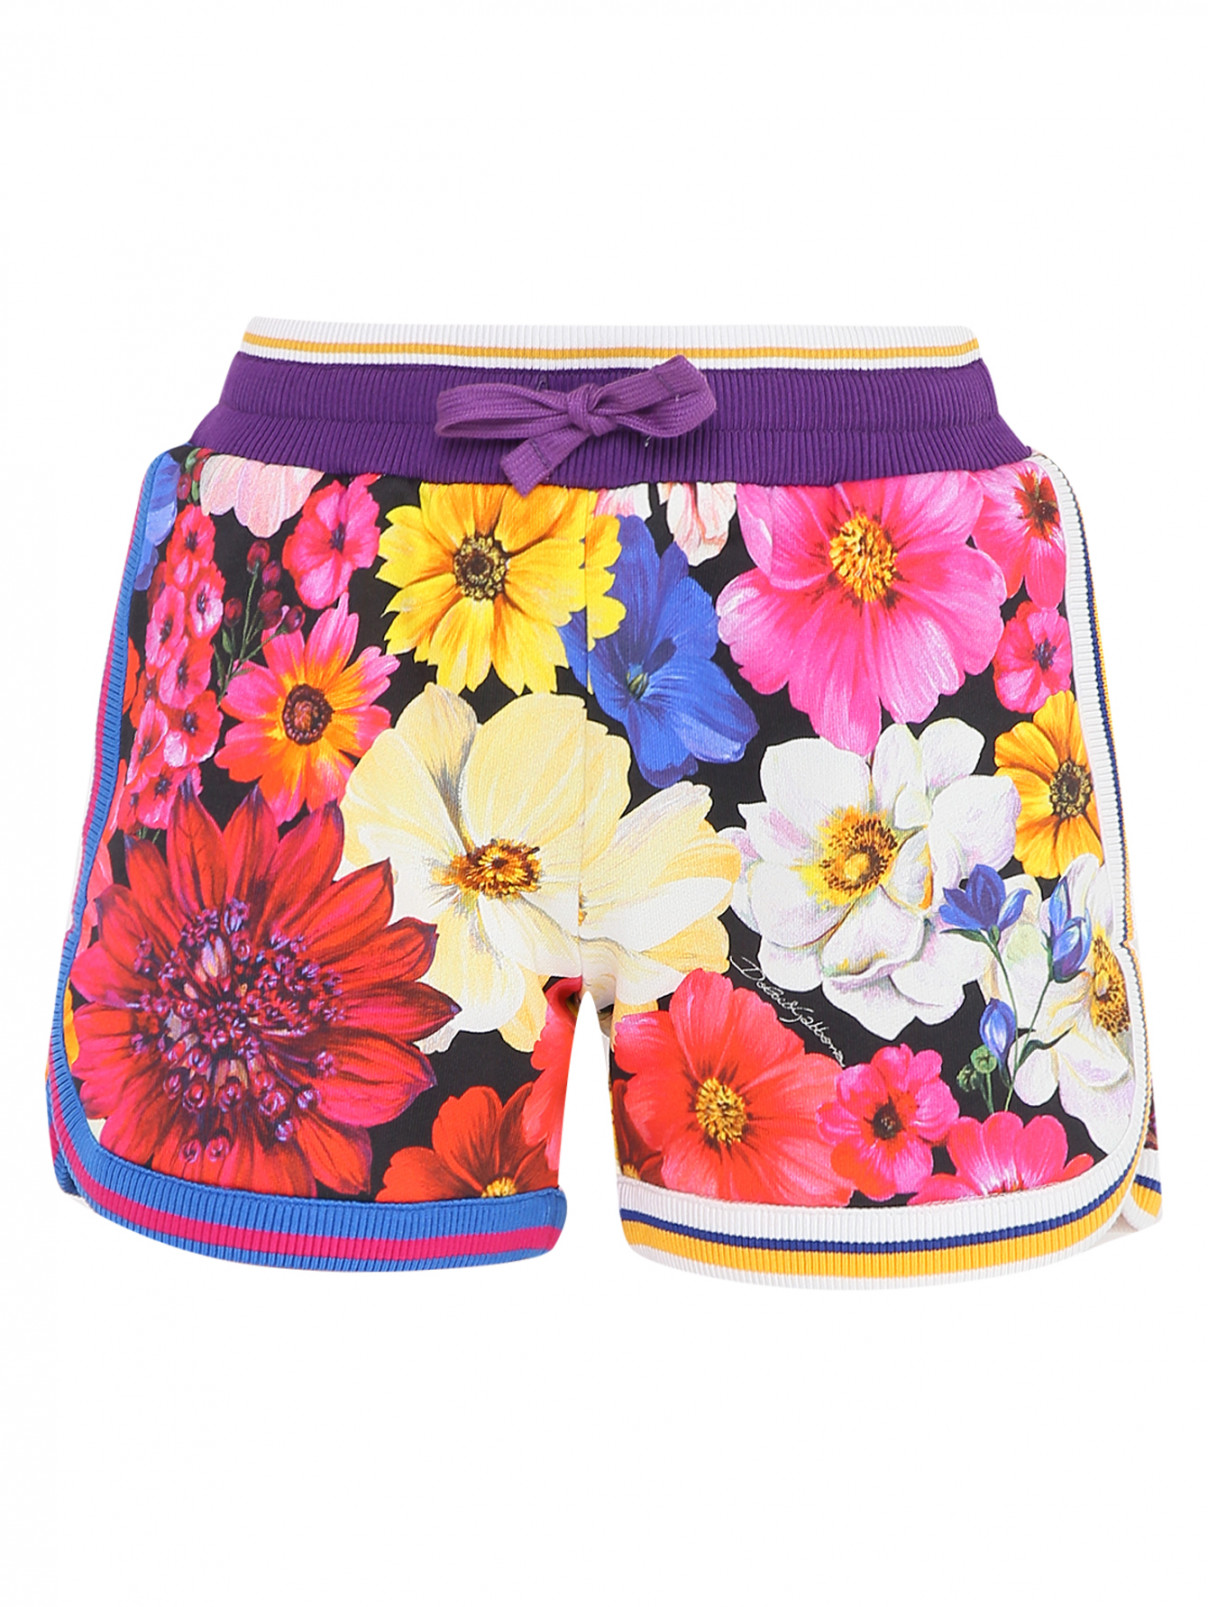 Хлопковые шорты с узором Dolce & Gabbana  –  Общий вид  – Цвет:  Узор